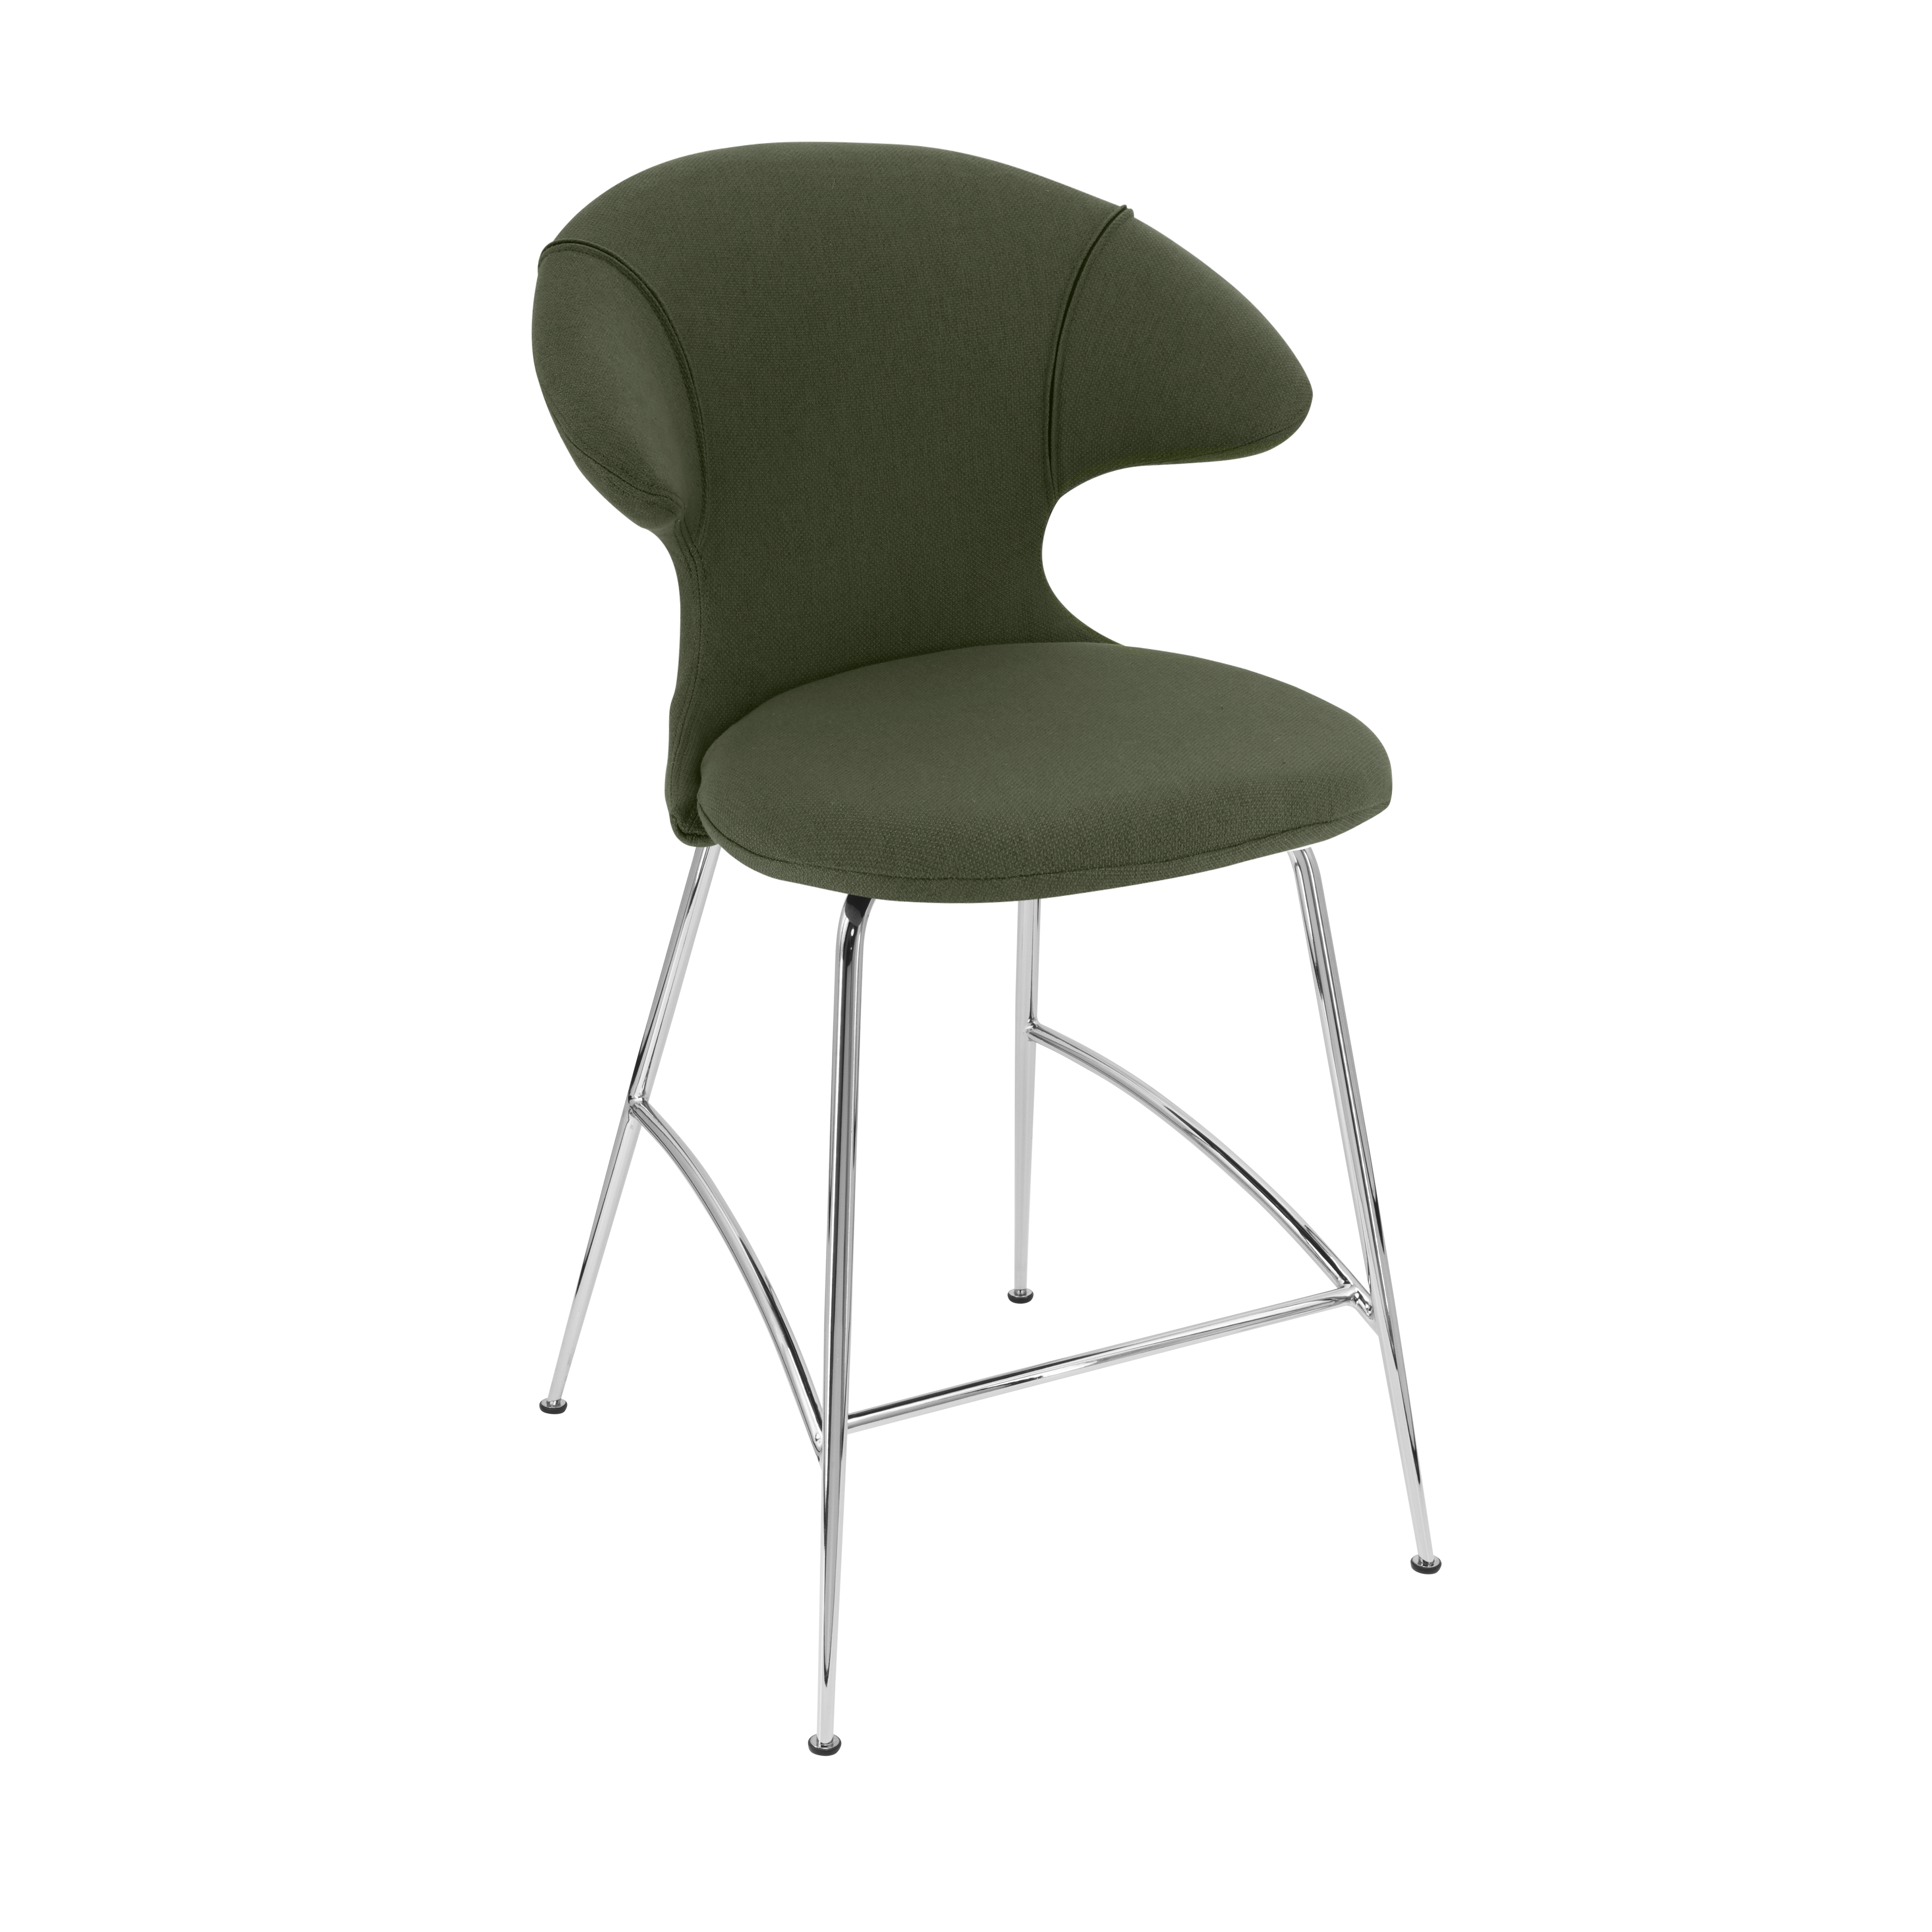 Time Flies Counter Stuhl in Racing Green präsentiert im Onlineshop von KAQTU Design AG. Barstuhl mit Armlehne ist von Umage